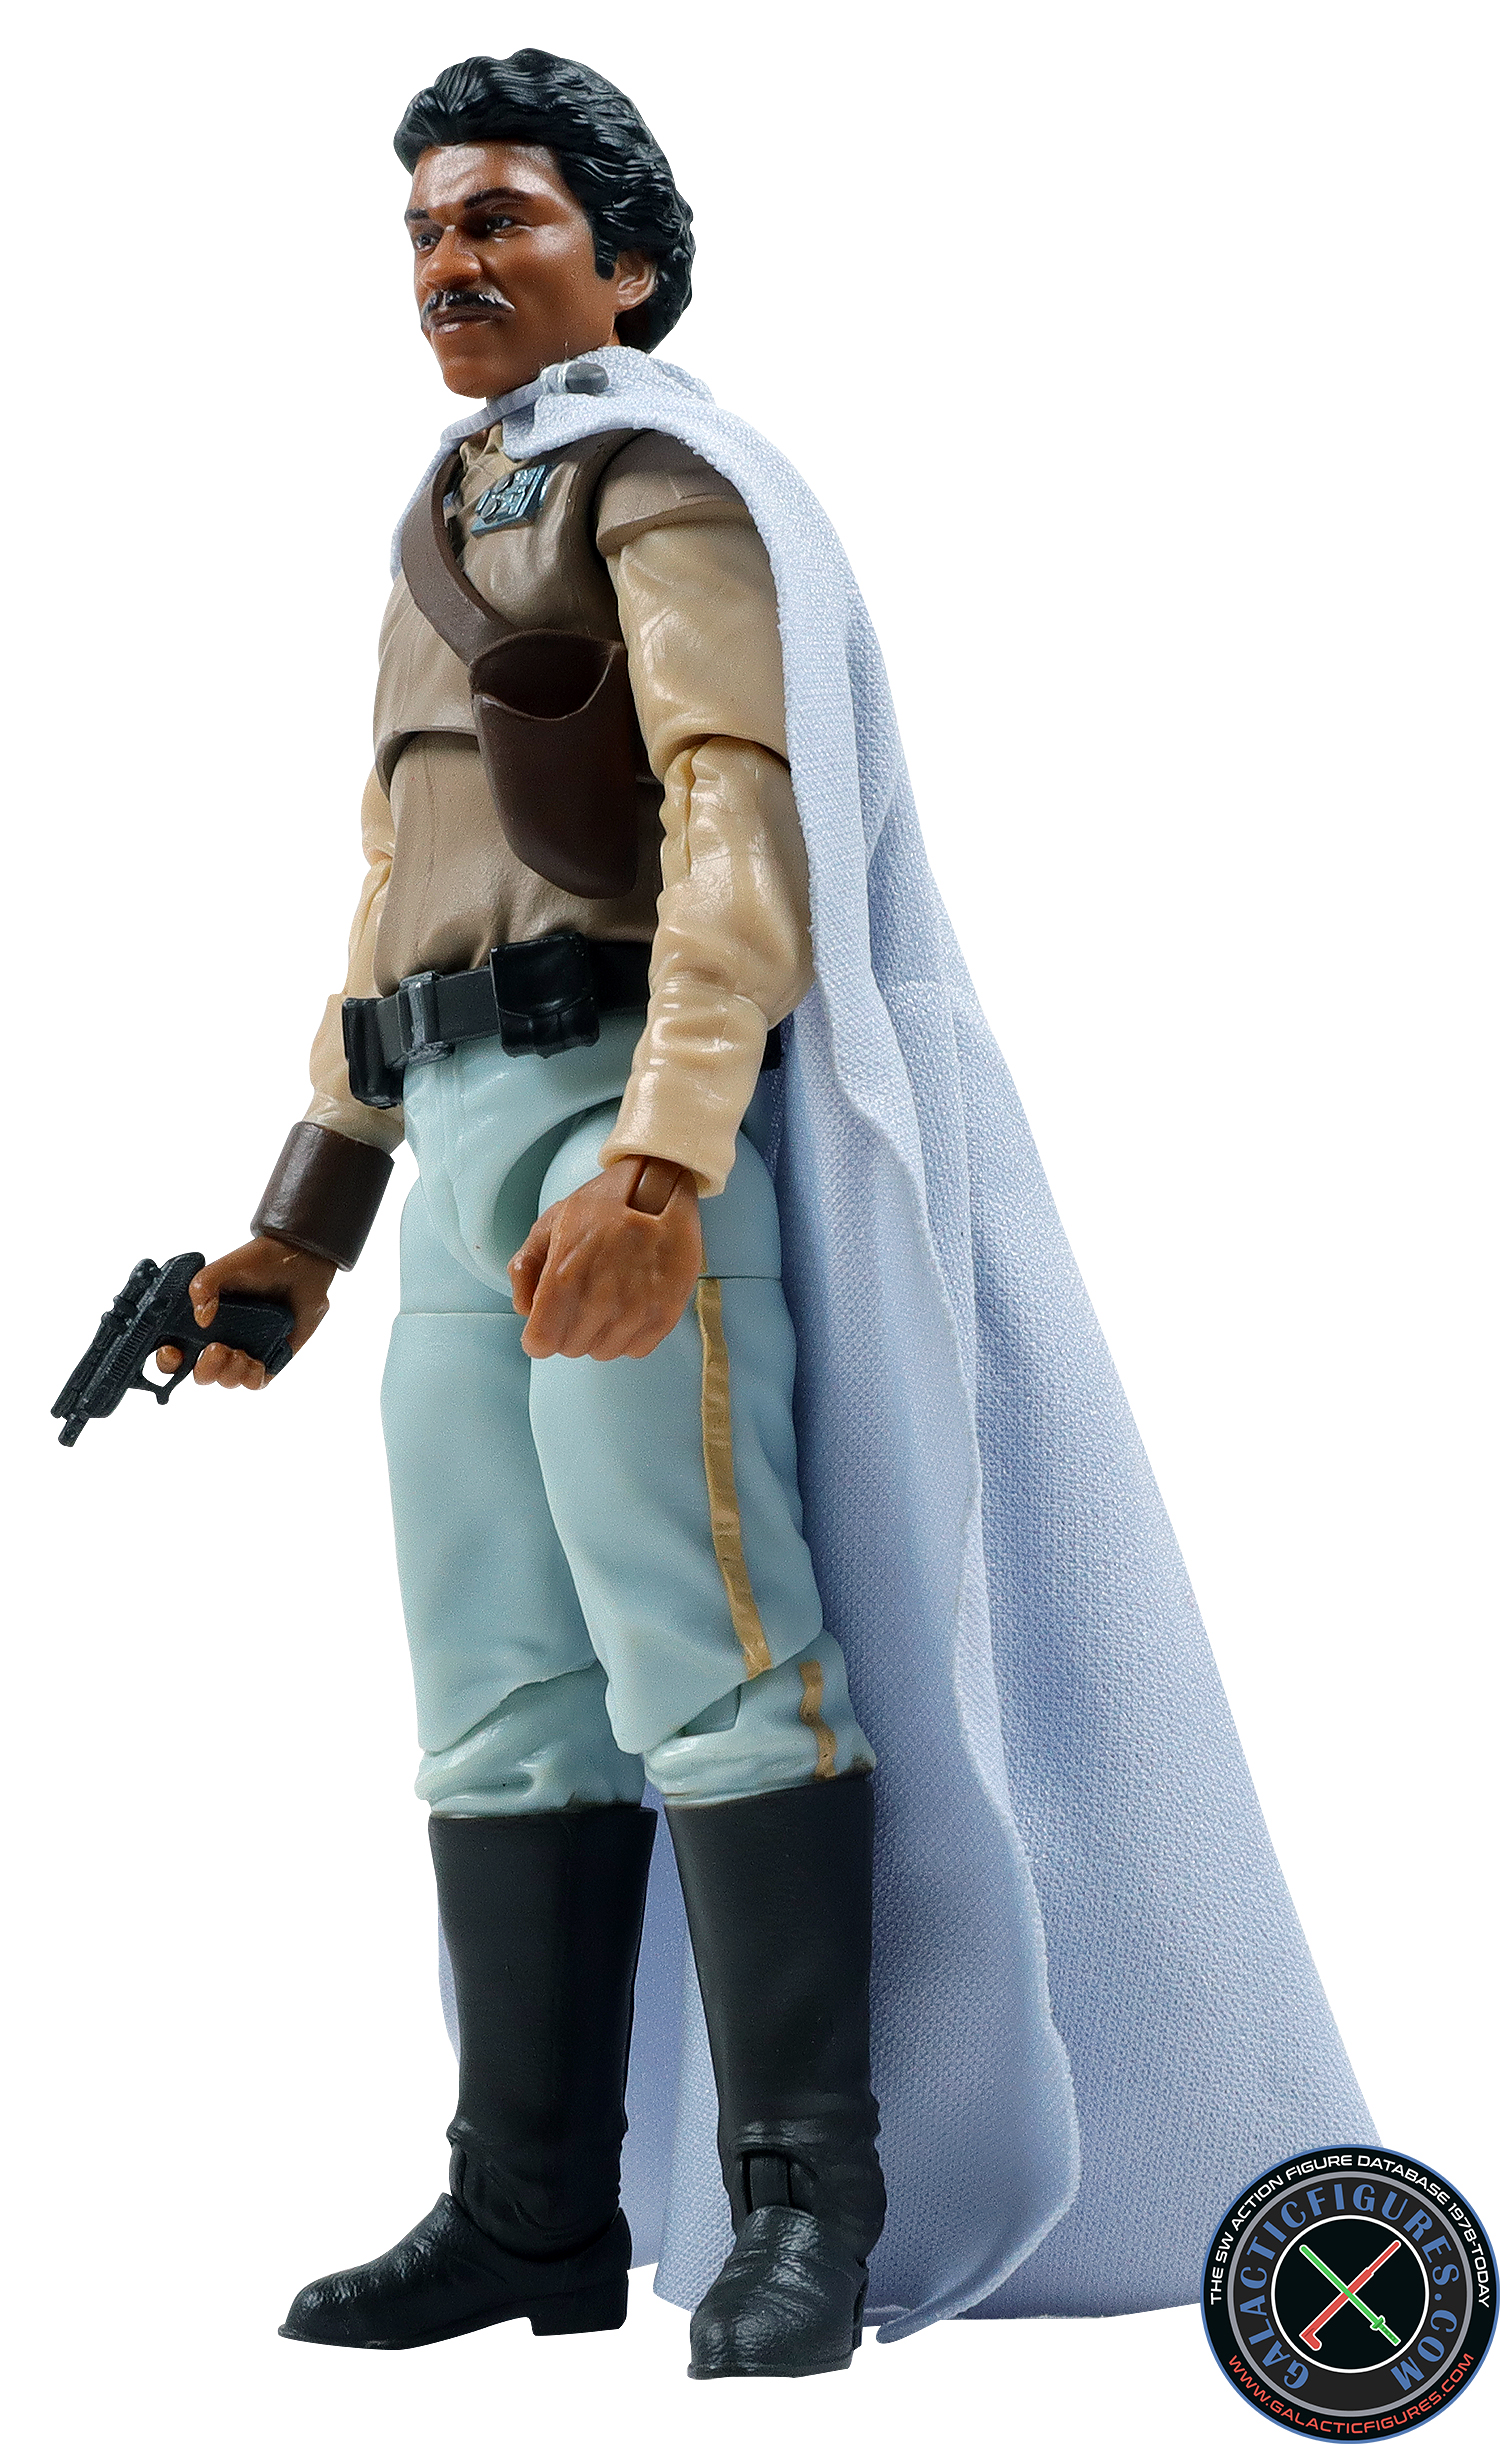 Lando Calrissian General